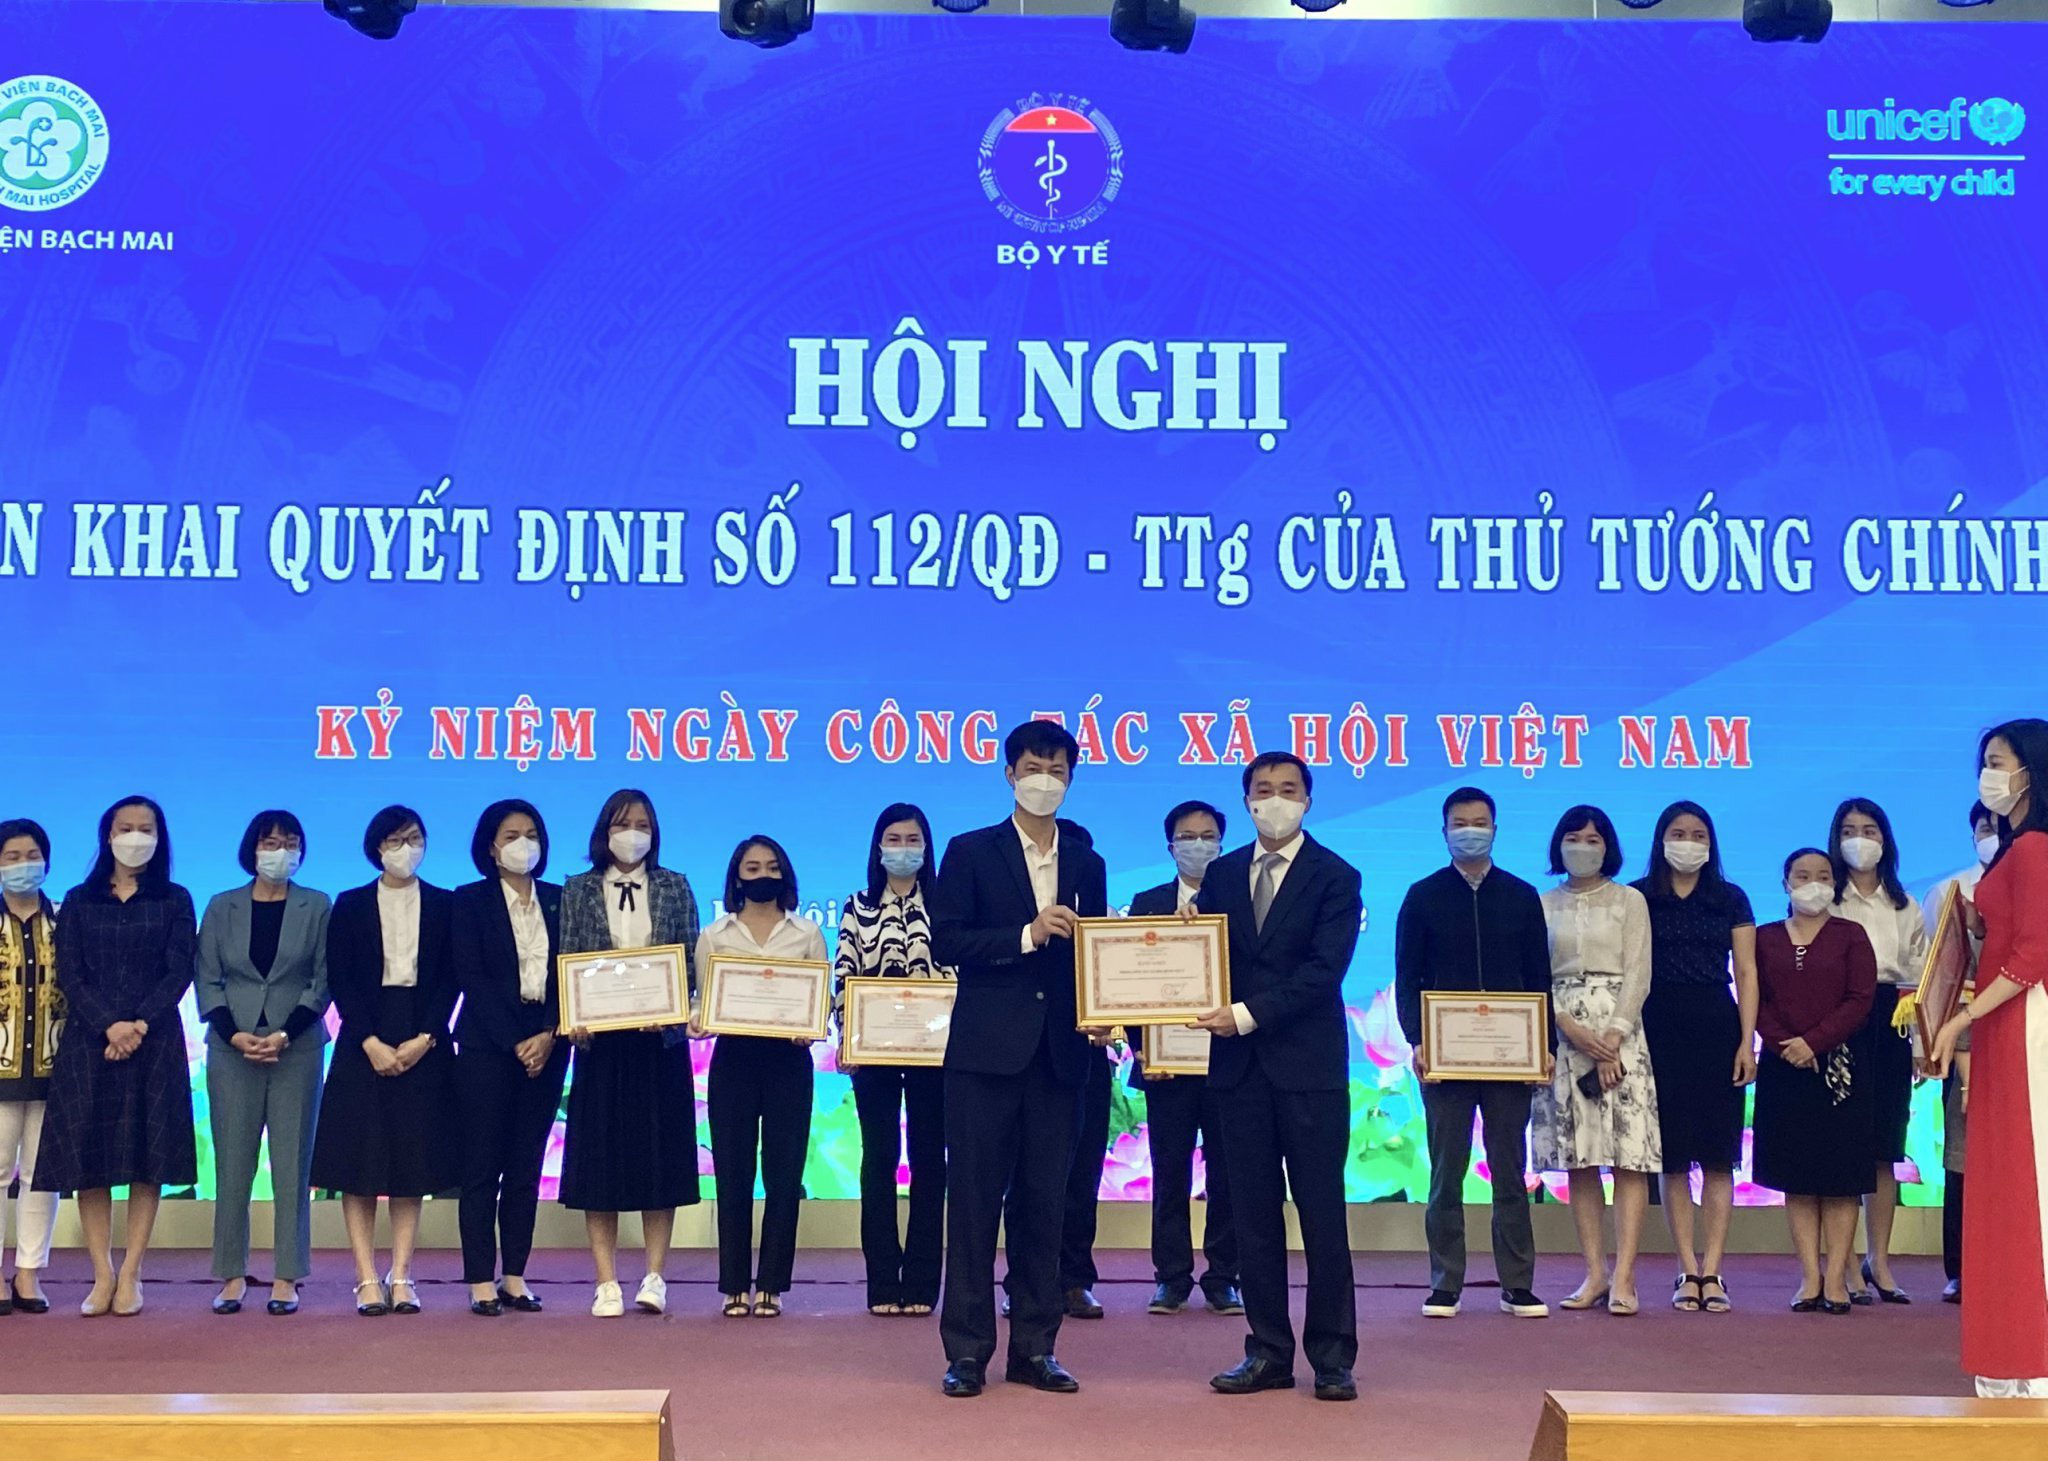 Hội nghị triển khai Quyết định 112/QĐ-TTg của Thủ tướng Chính phủ và Kỷ niệm ngày Công tác xã hội Việt Nam